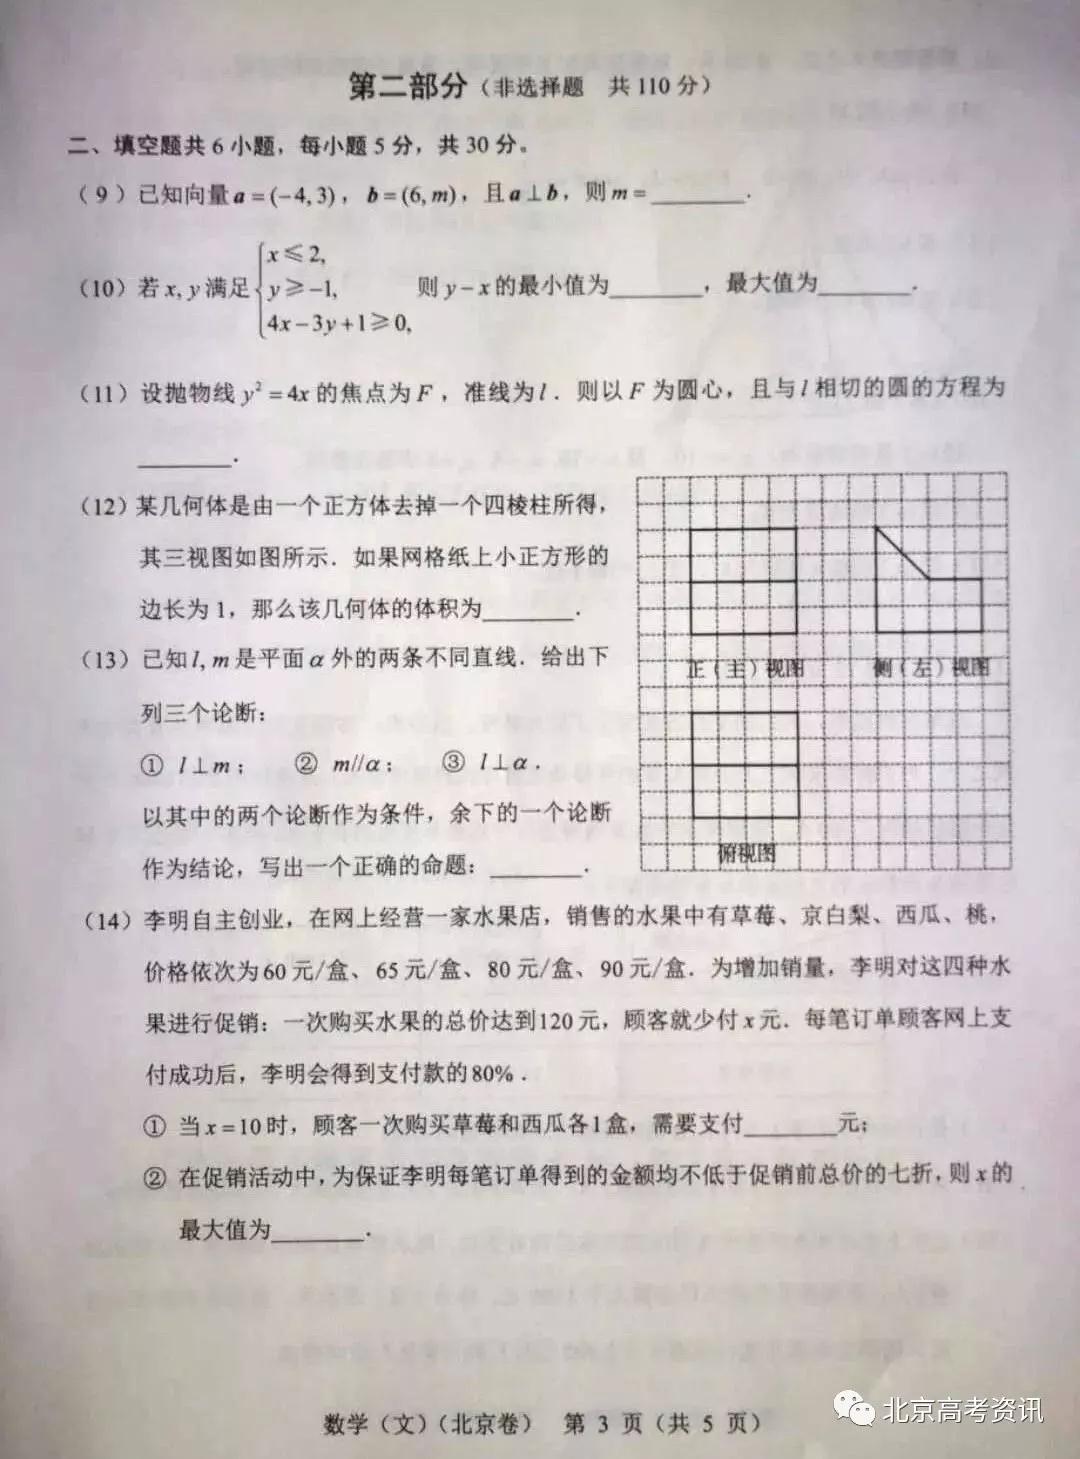 2019年高考真题北京卷文数试题及答案